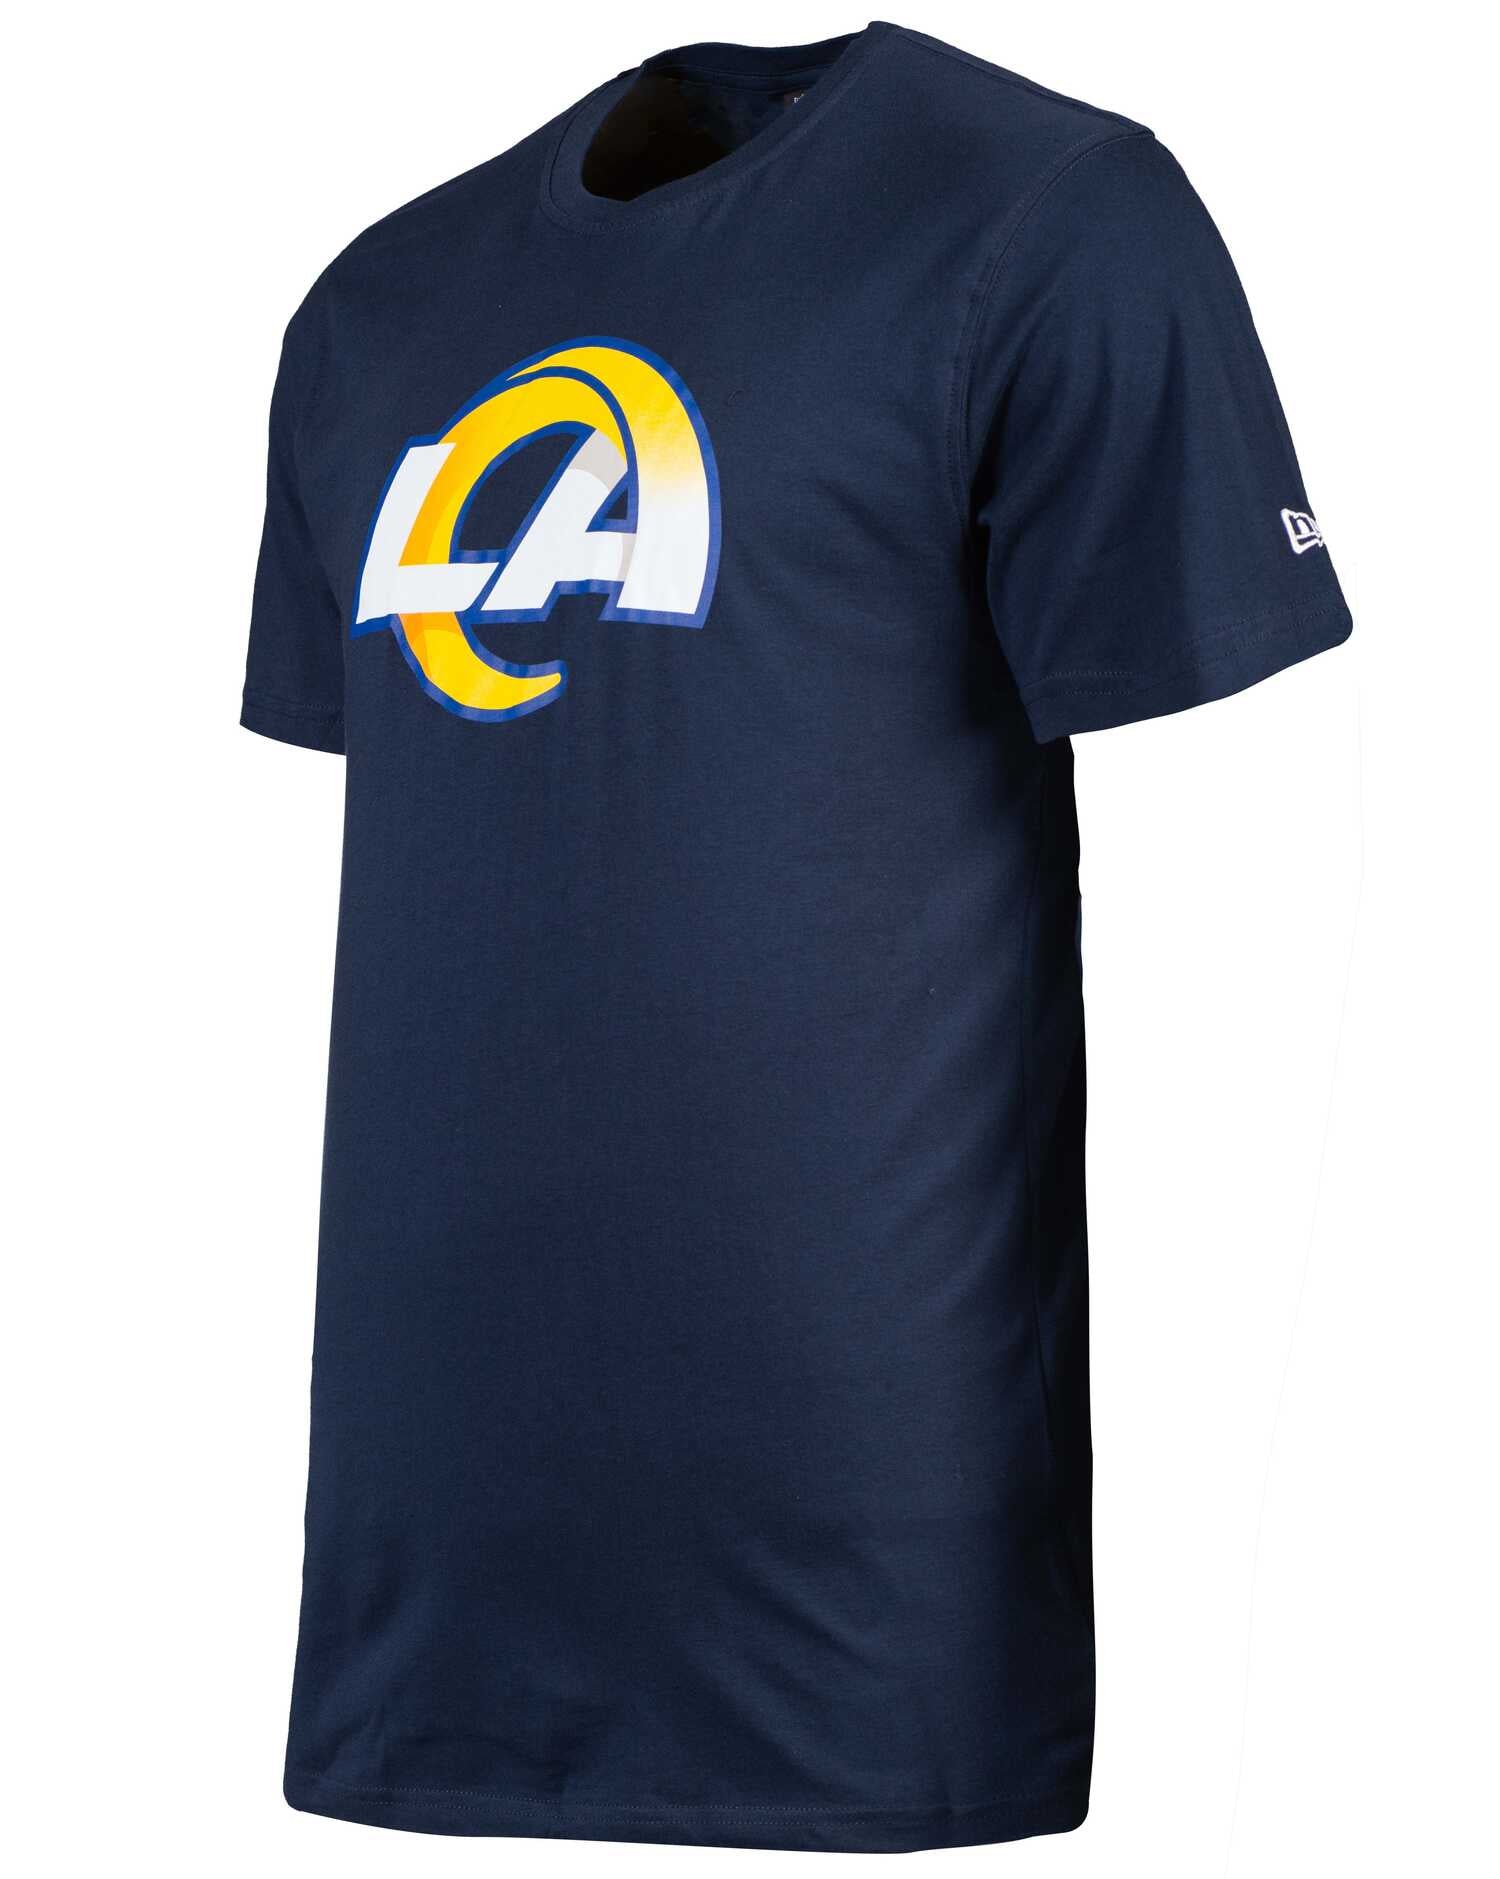 New Era - NFL Los Angeles Rams Team Logo T-Shirt - Blau